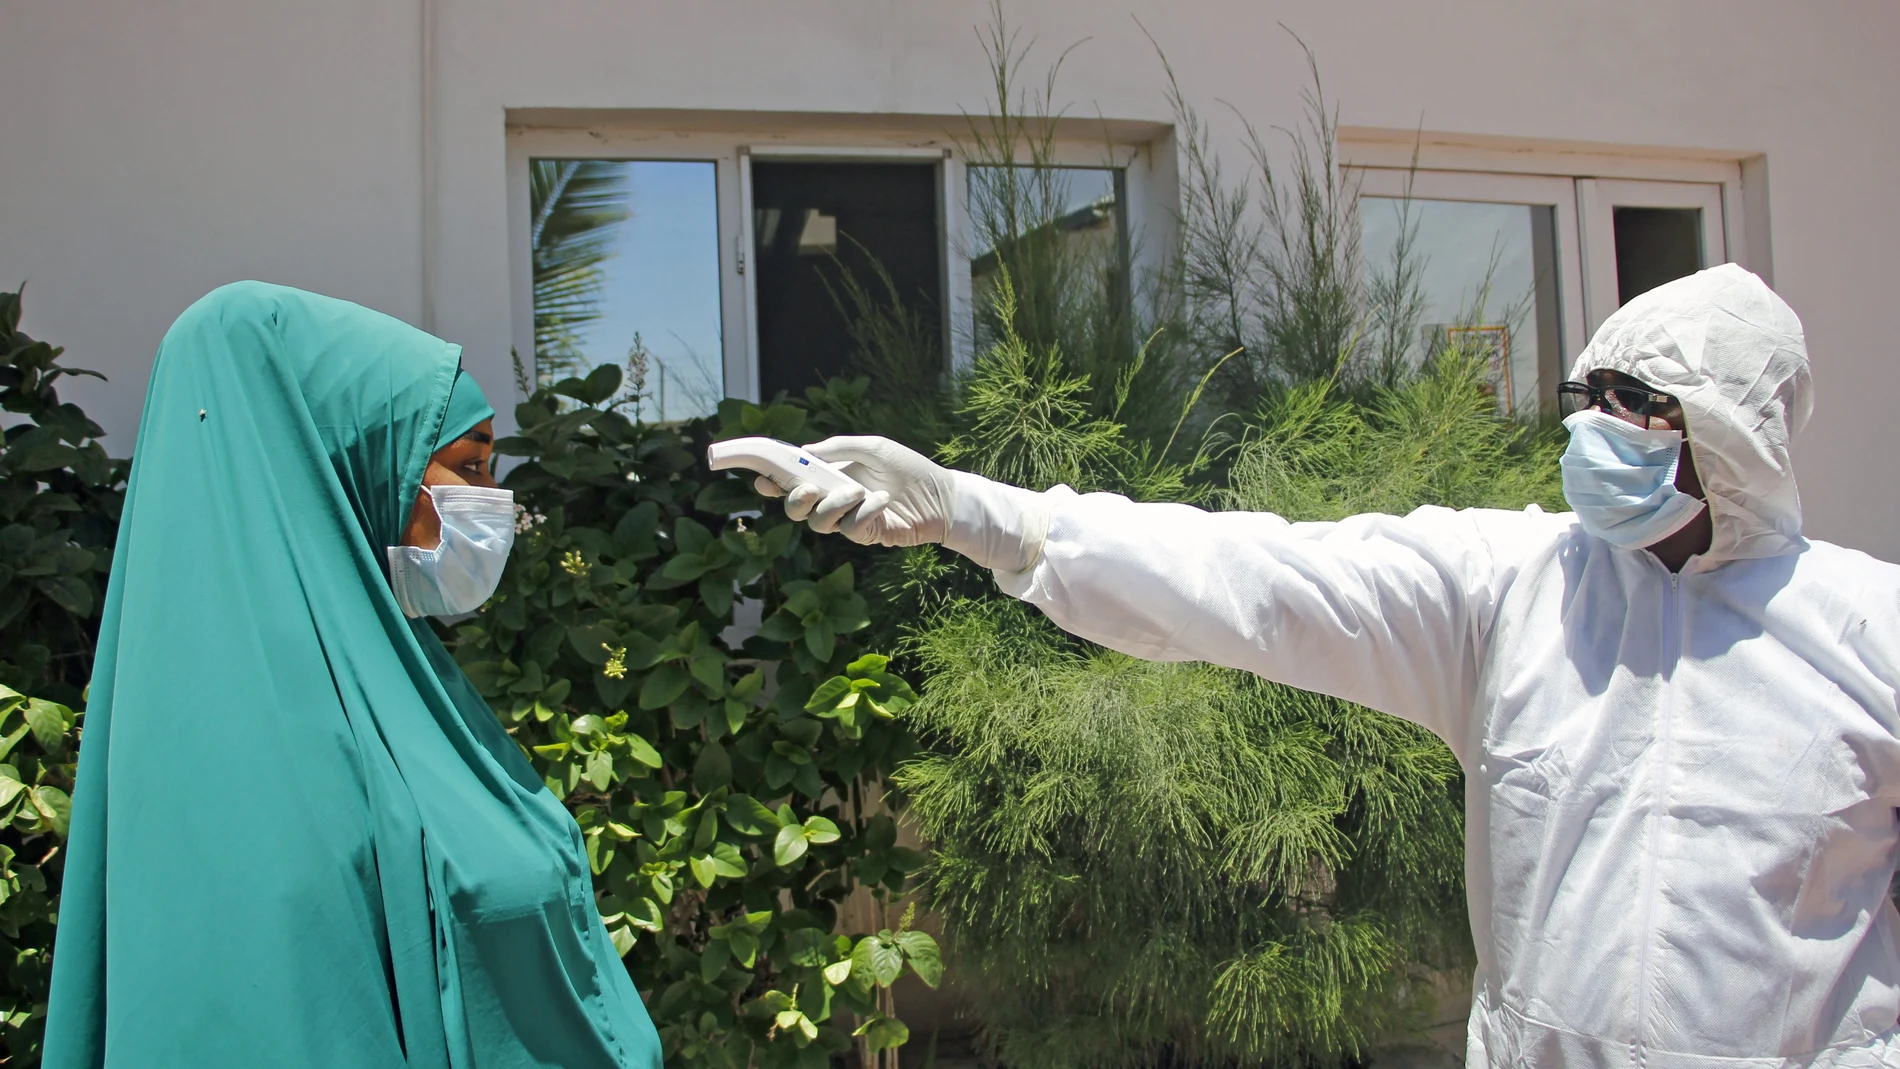 Los kits contra el coronavirus en Mogadiscio, Somalia